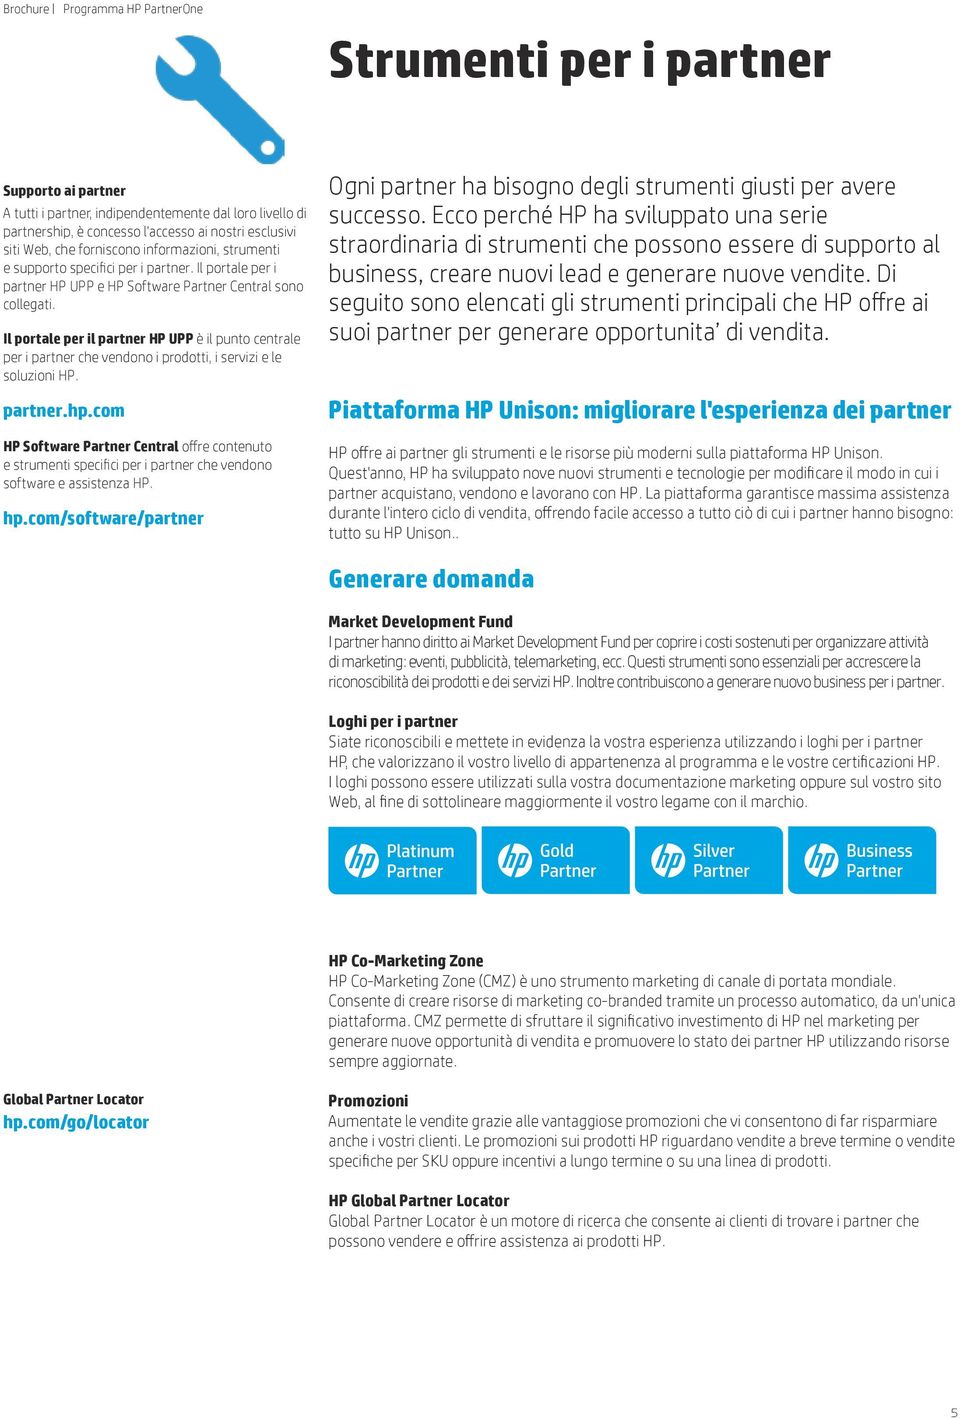 Il portale per il partner HP UPP è il punto centrale per i partner che vendono i prodotti, i servizi e le soluzioni HP. partner.hp.